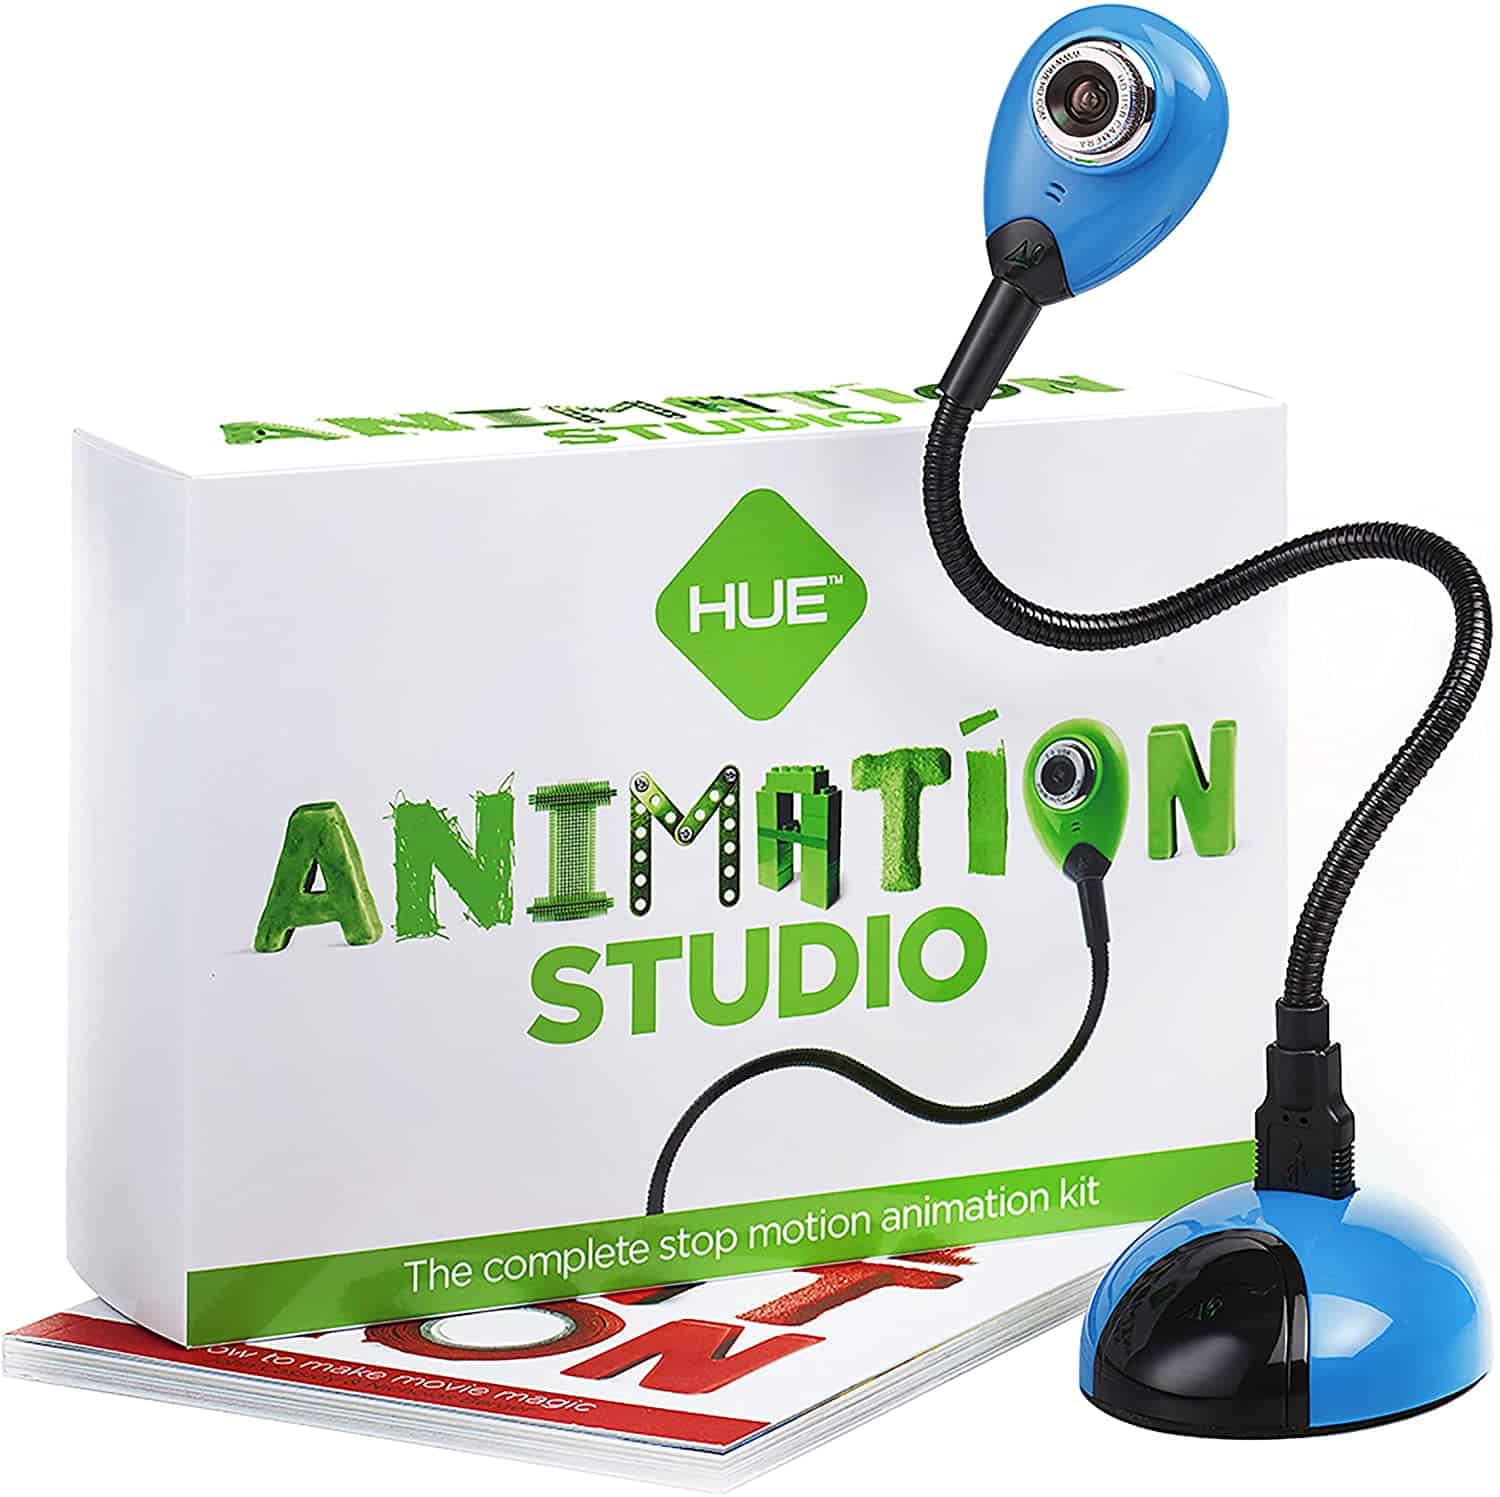 Beste stop-motionkit met camera - Hue Animation Studio Kit (voor Windows)